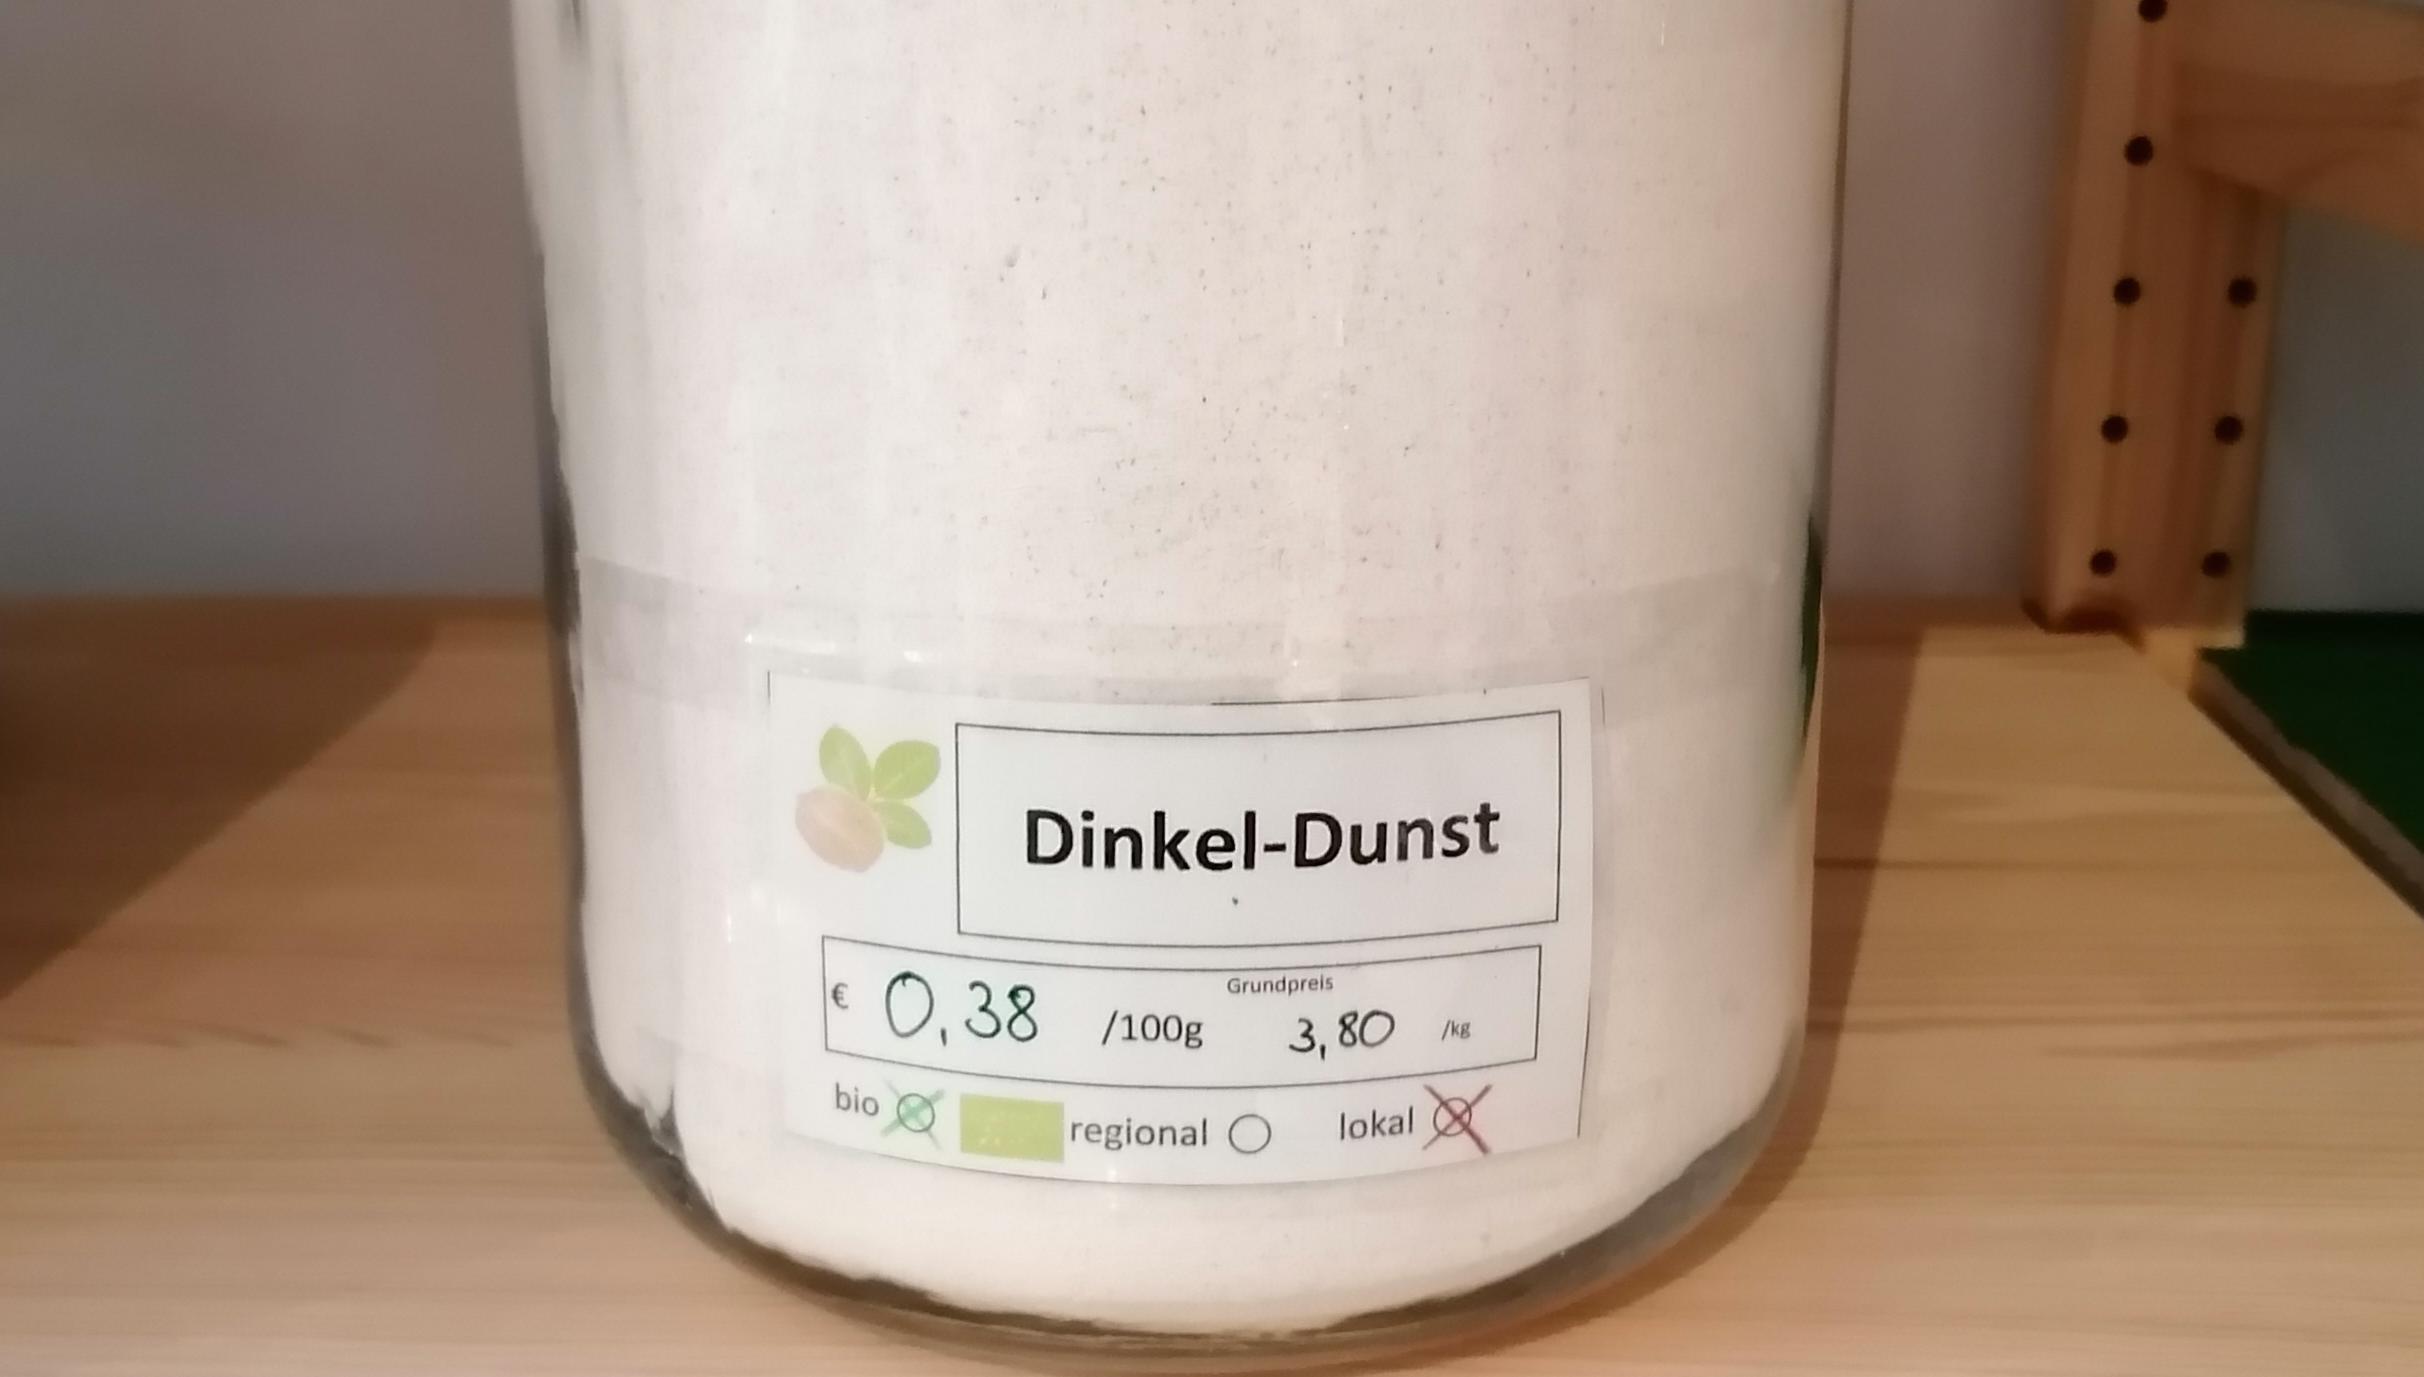 Dinkel-Dunst